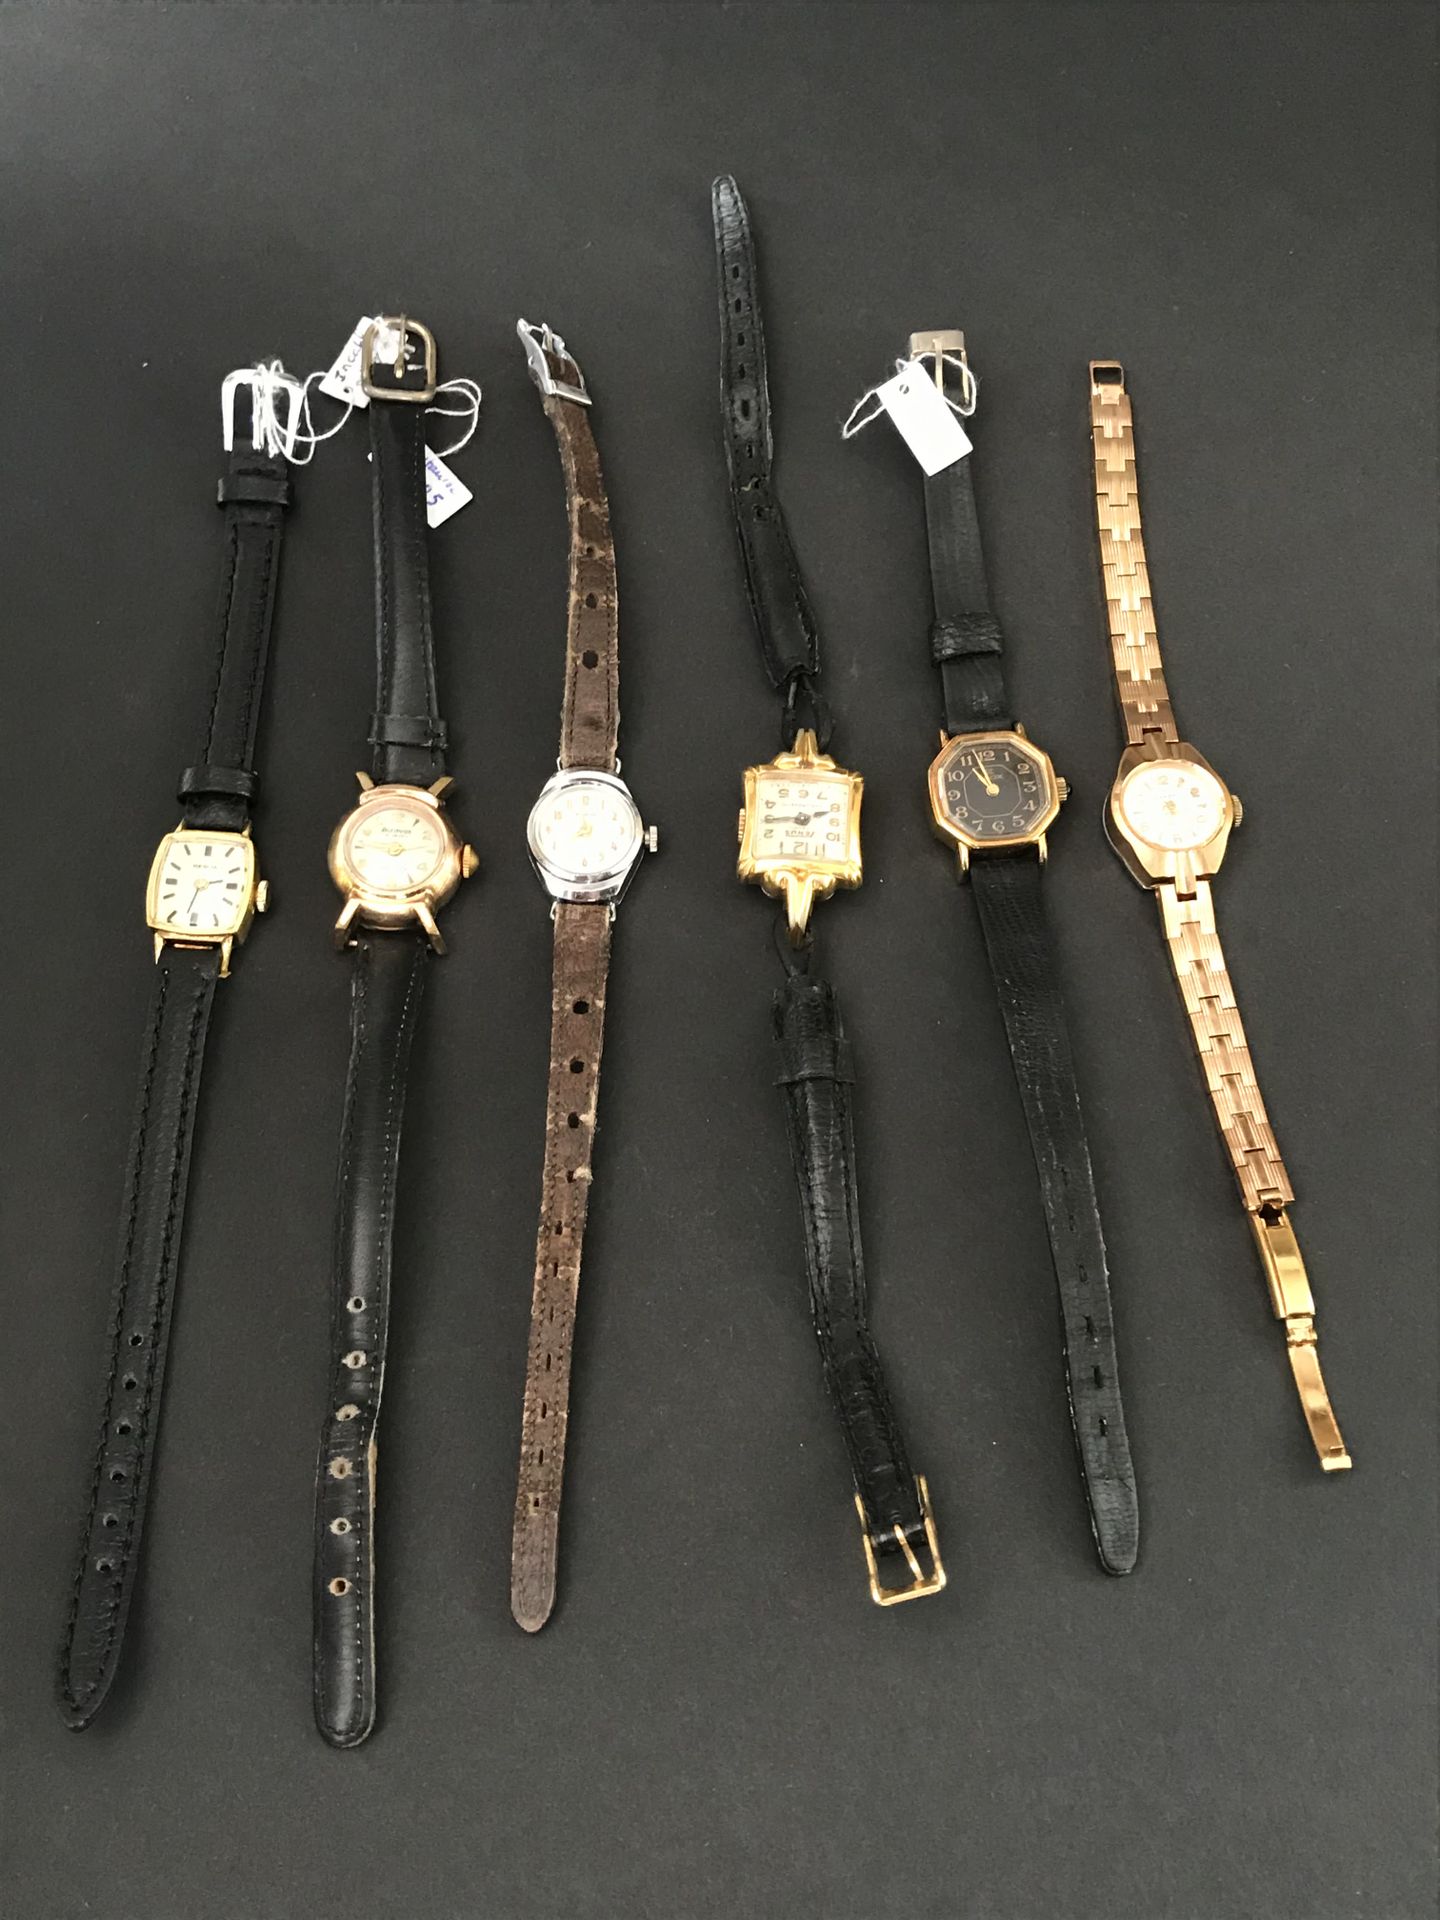 Null 六件女士手表

皮革和金属表带

处于工作状态